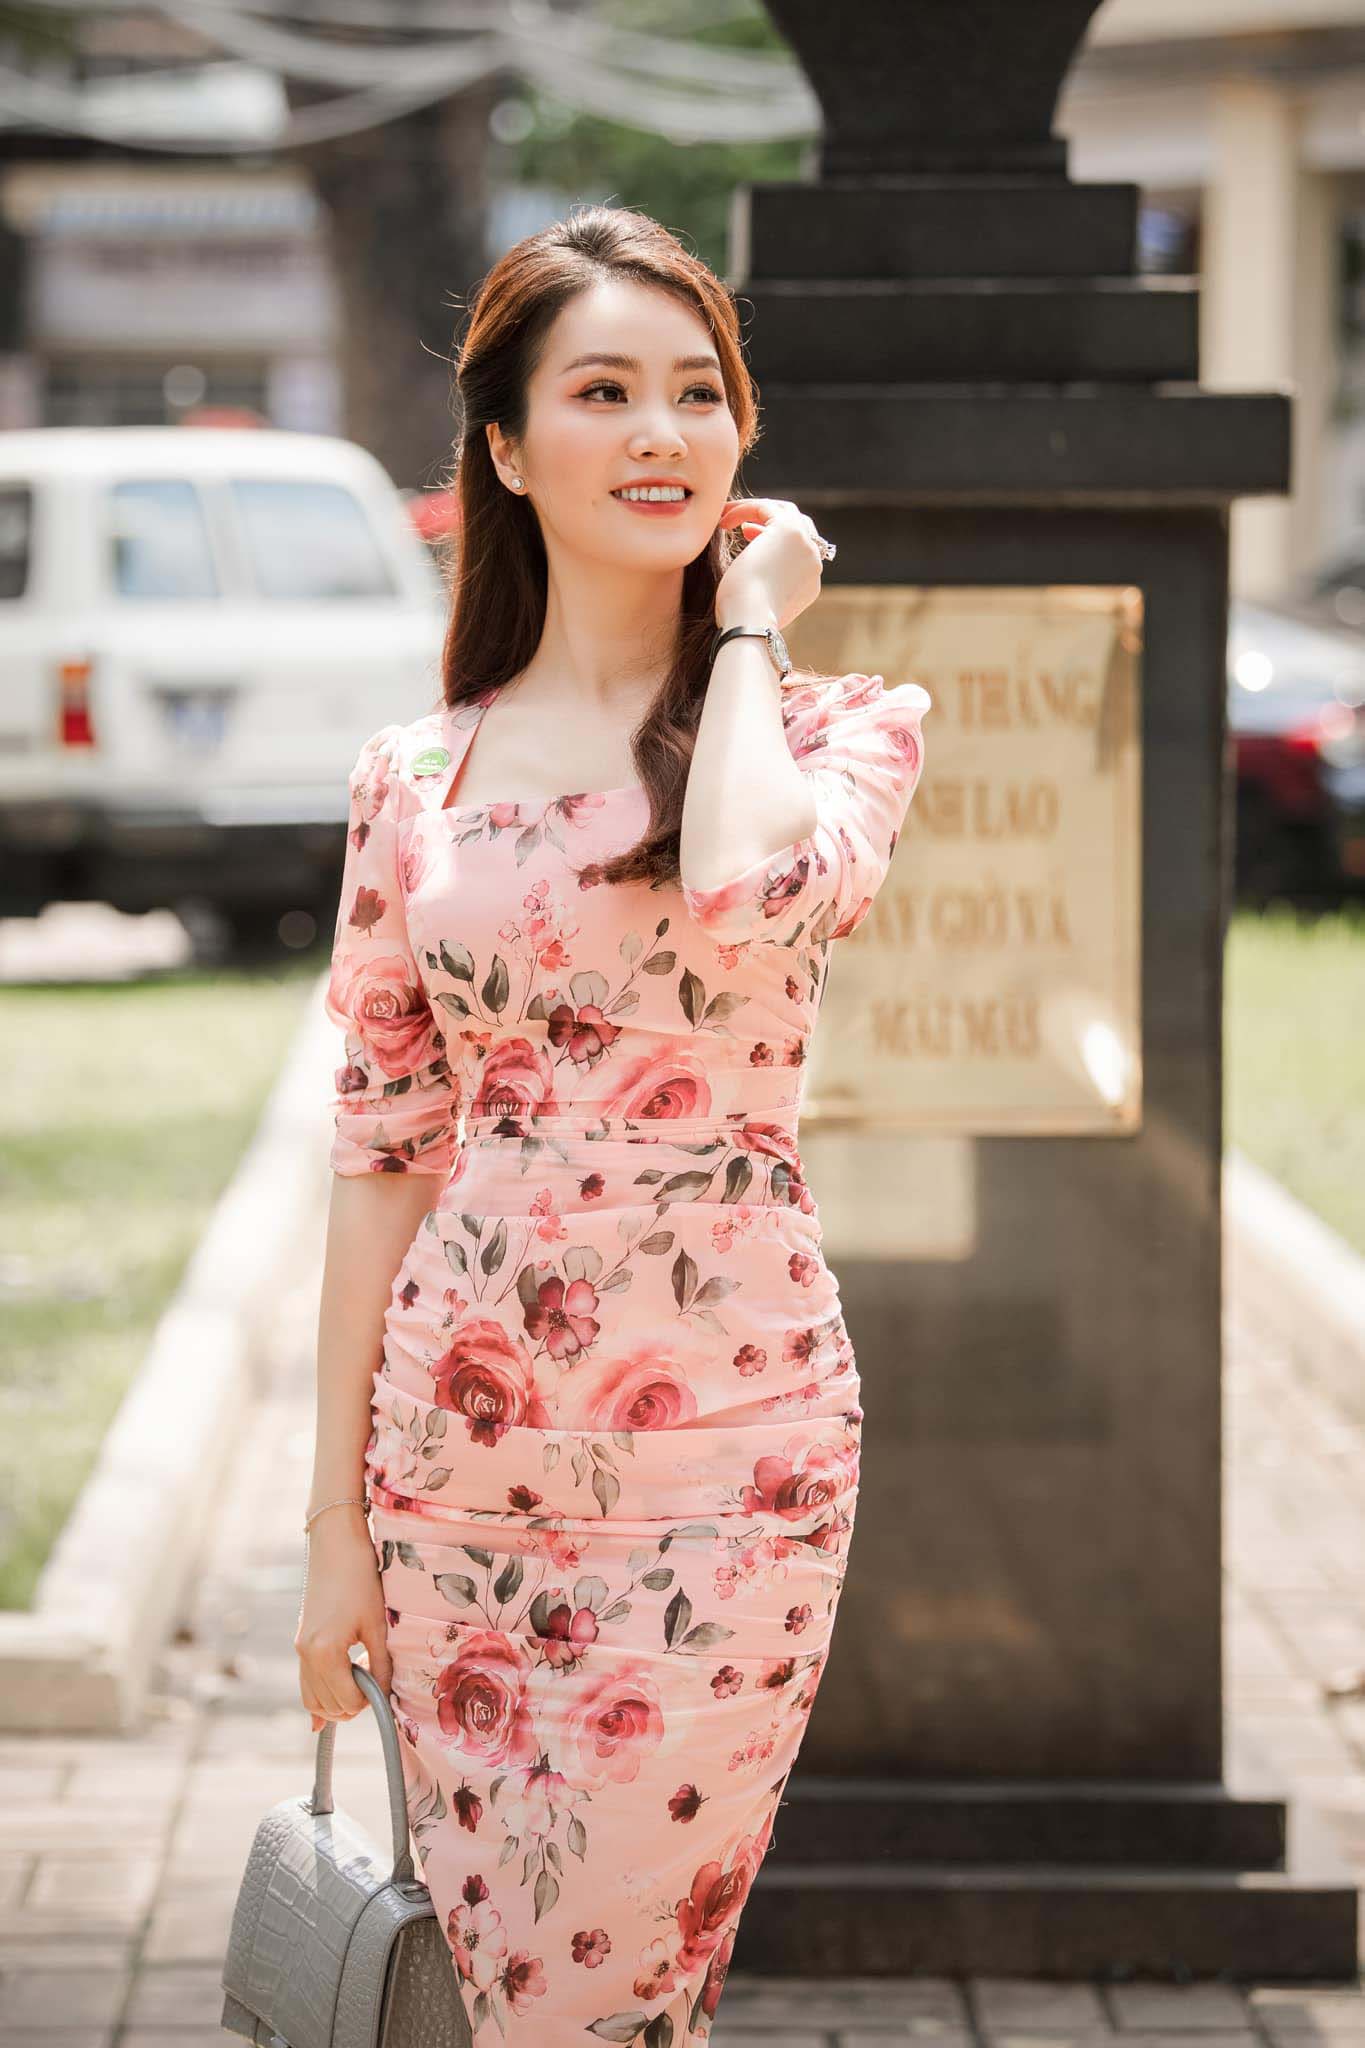 U40 vẫn diện váy hoa trẻ trung rạng ngời, BTV Thuỵ Vân không hổ ...